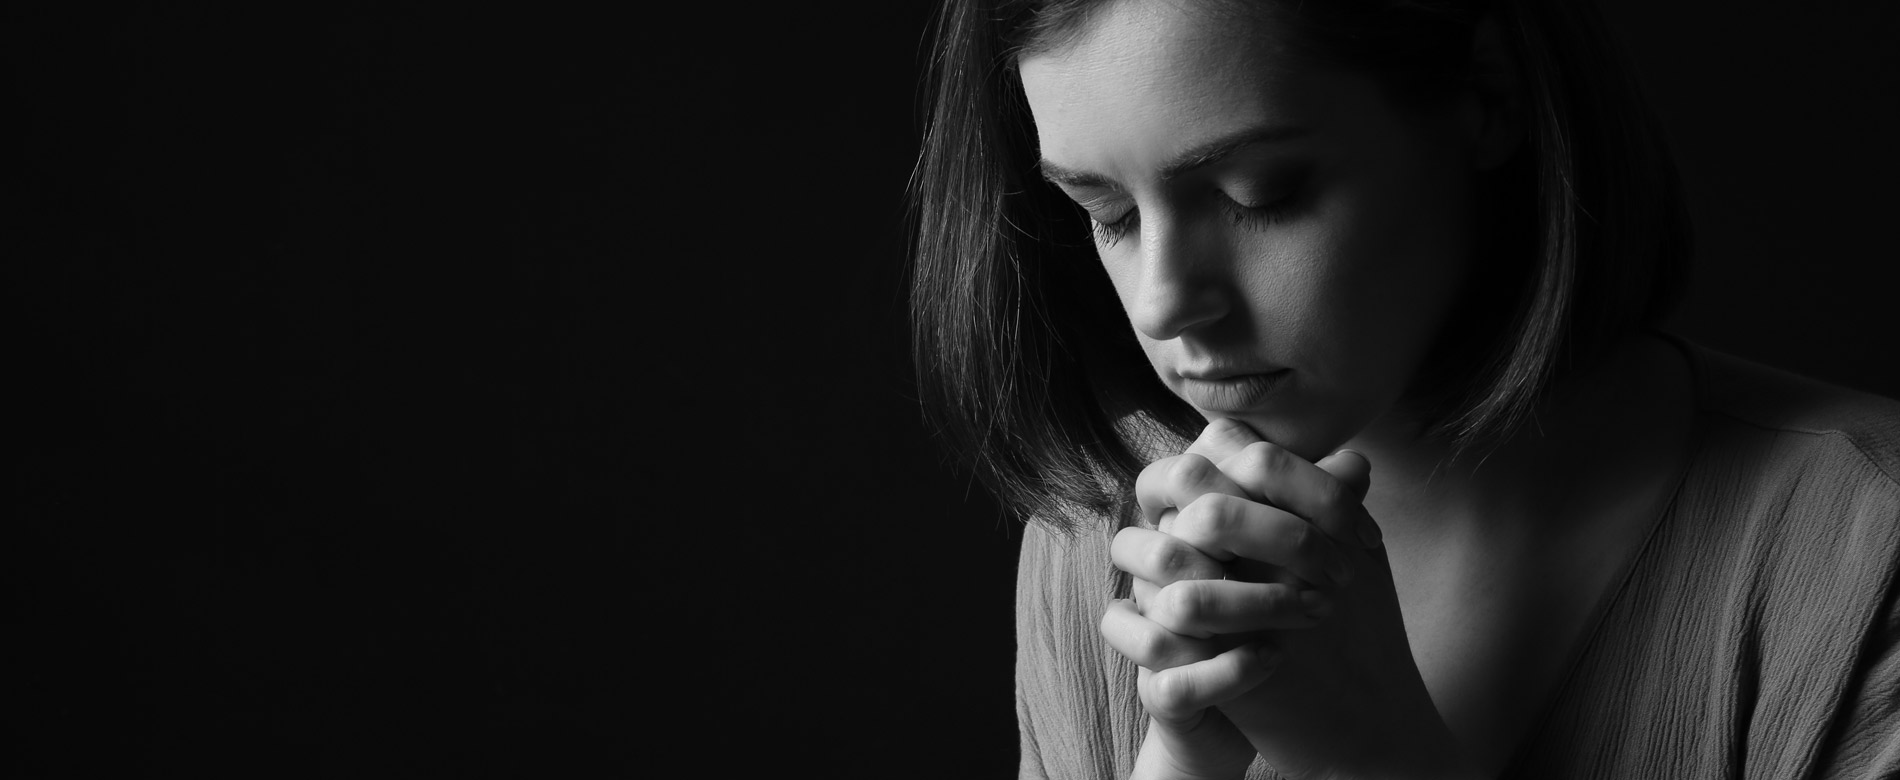 Resposta aos Internautas – “Minha oração não é de qualidade, e sim forçada”